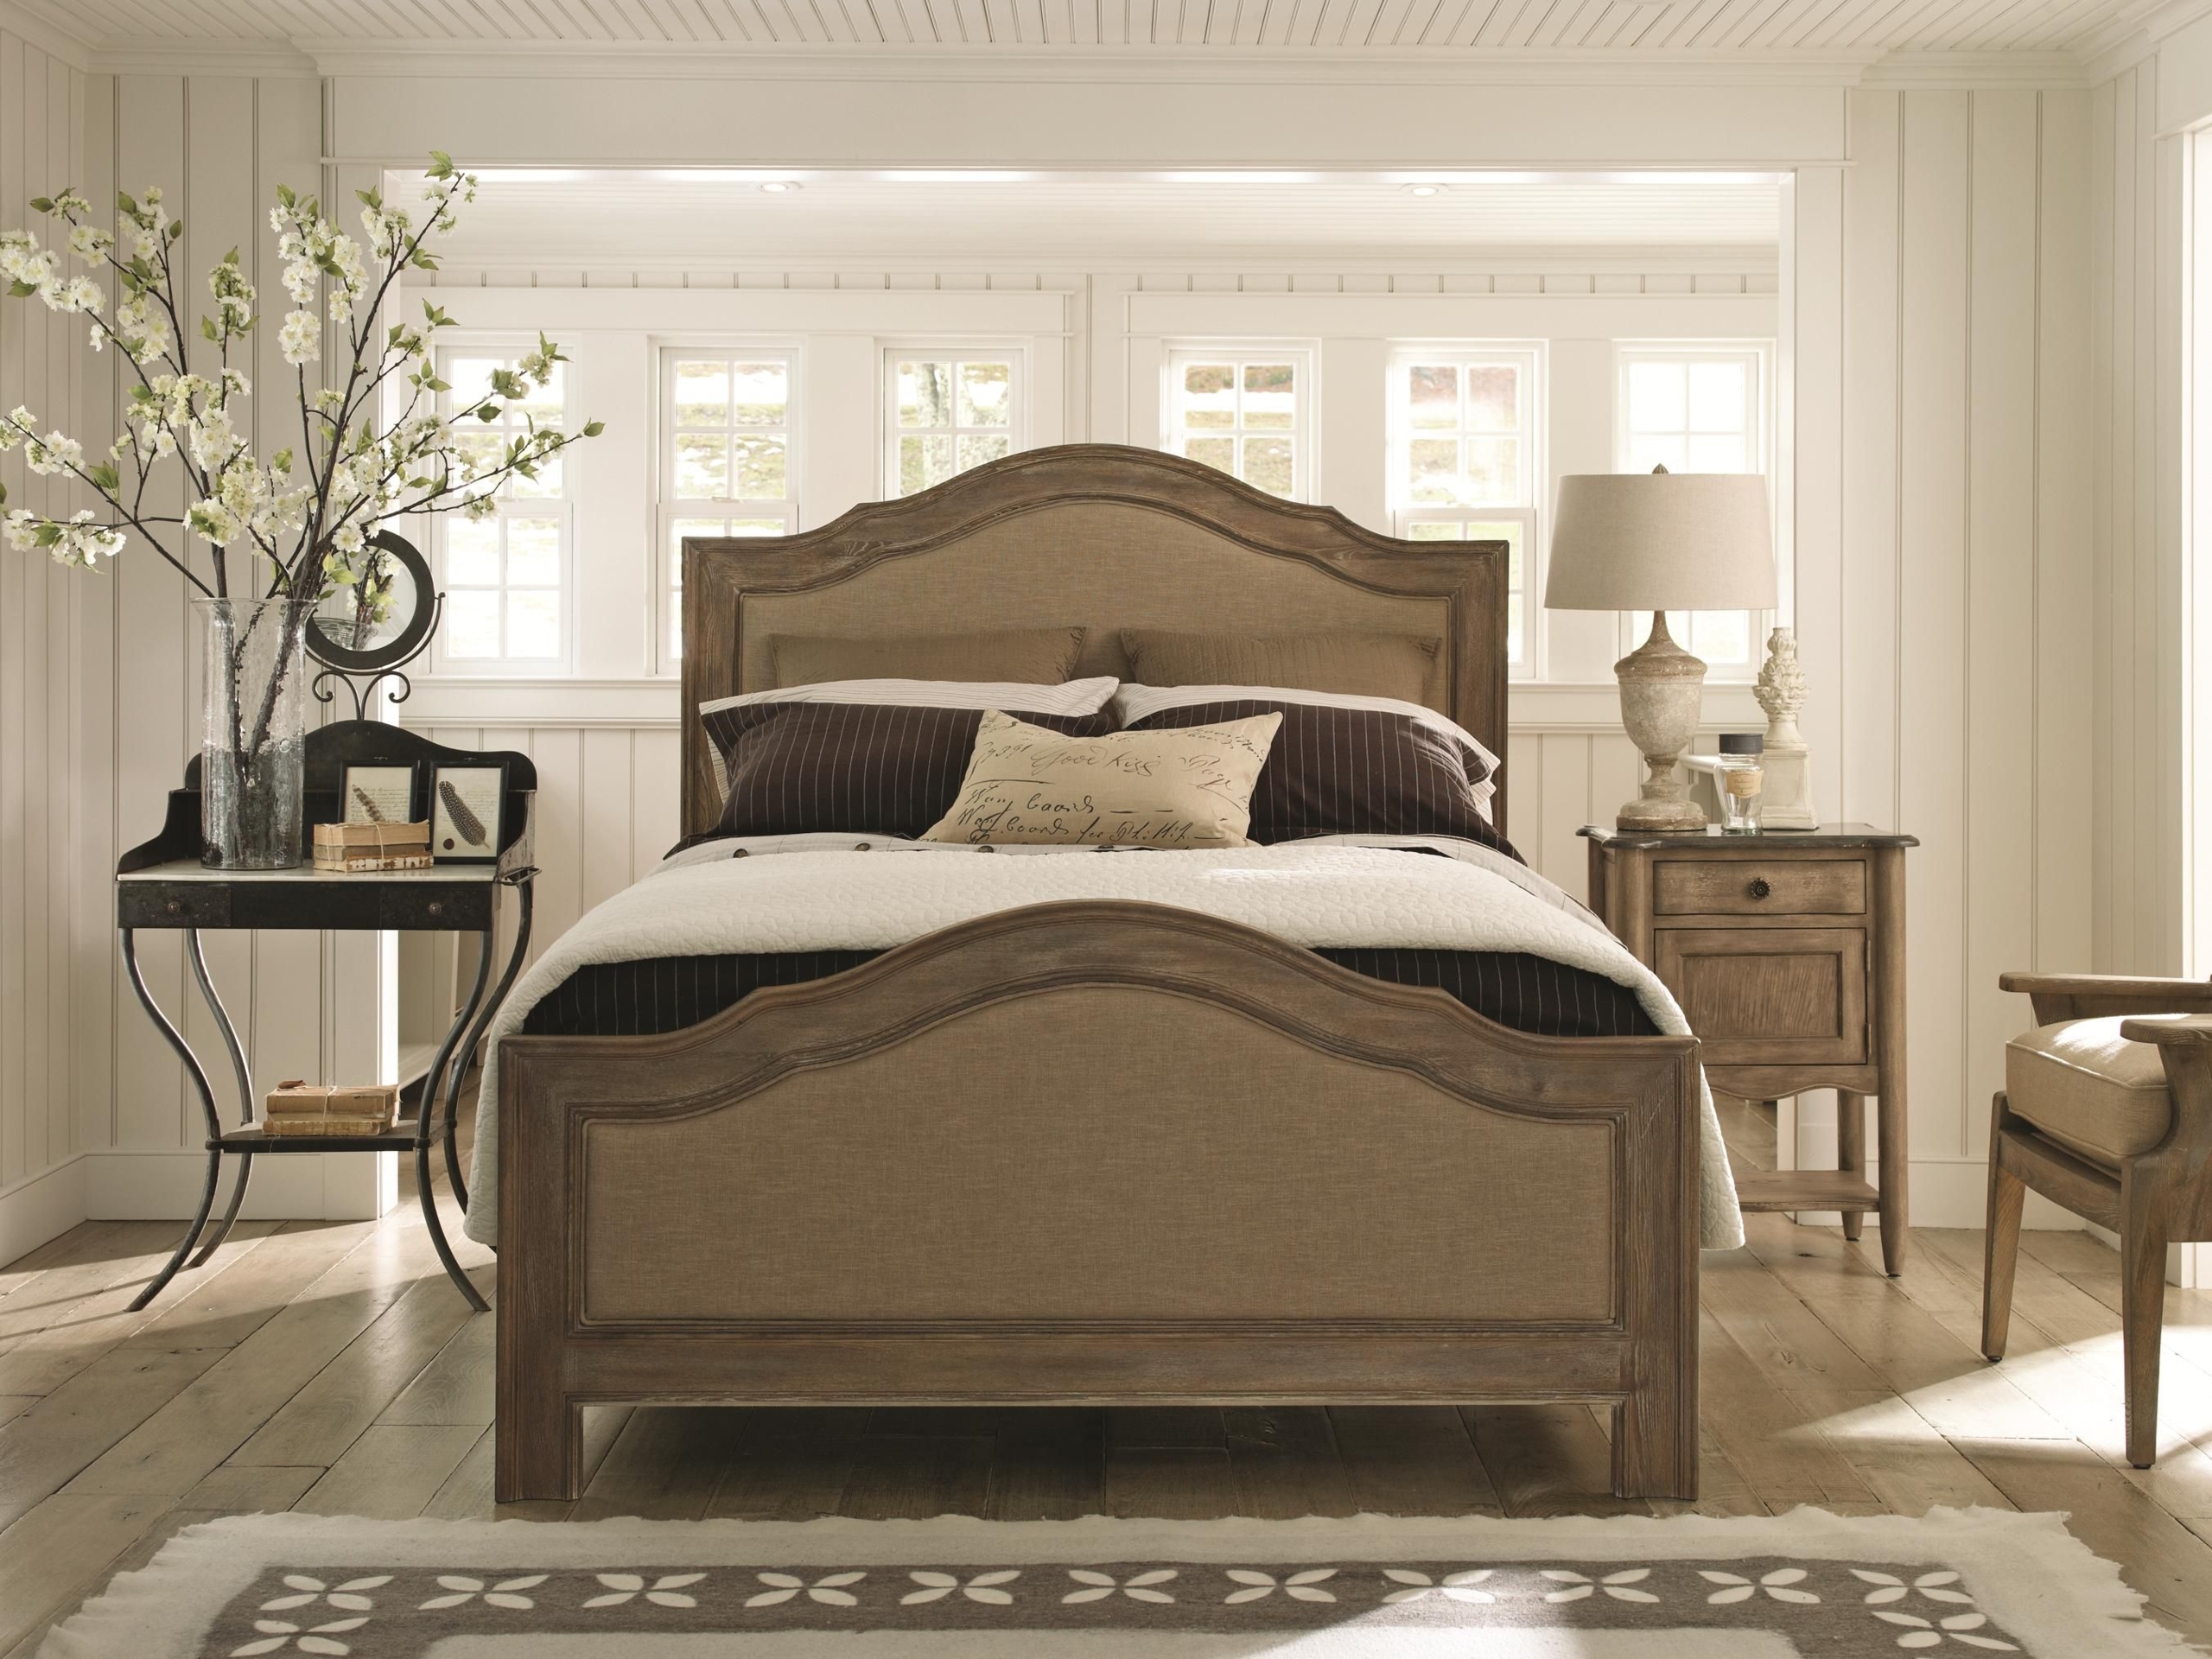 Pine bedroom furniture sets